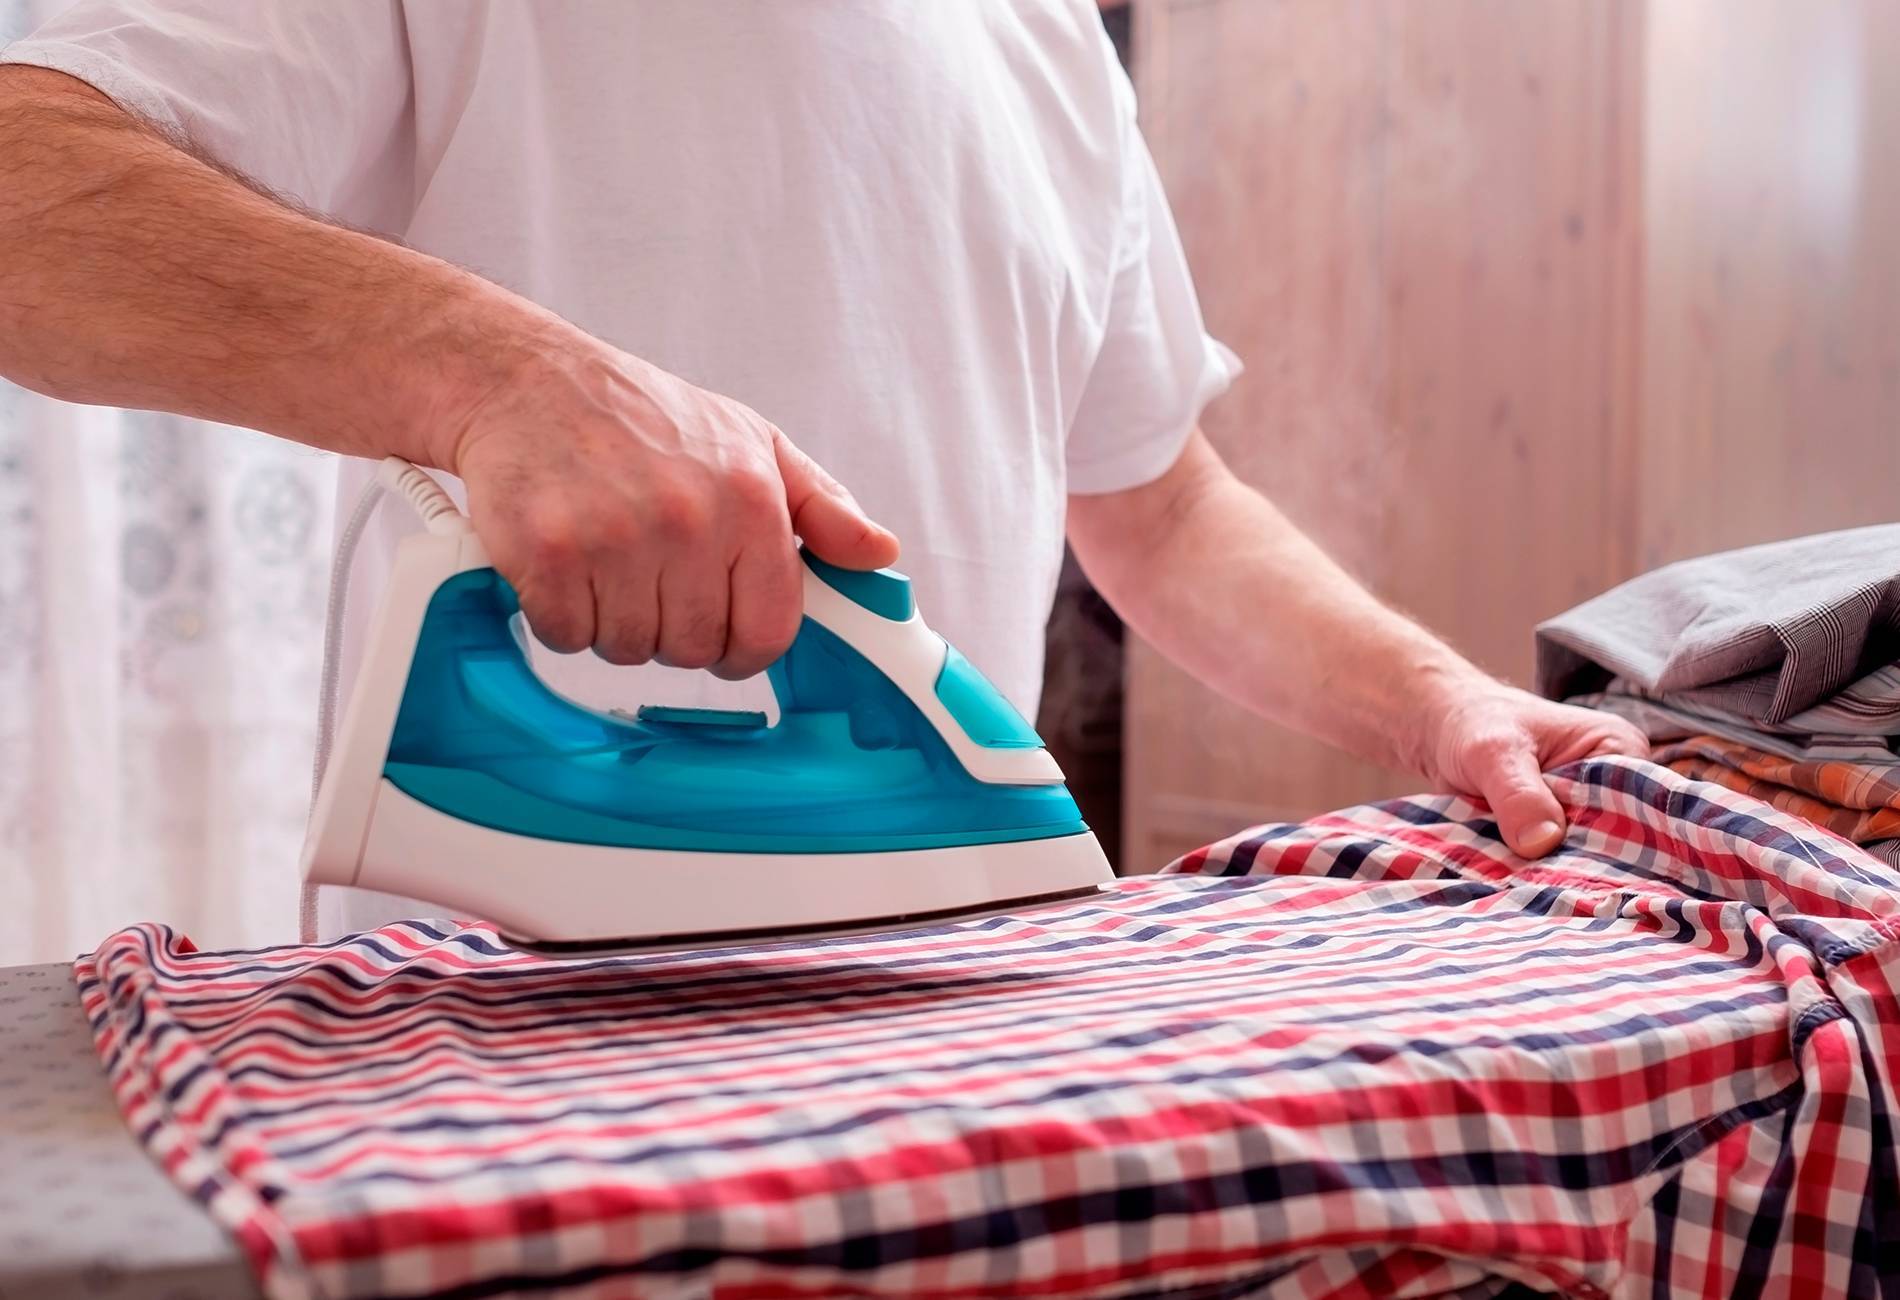 Как правильно гладить одежду, постельное белье, тюль? как правильно гладить вещи на гладильной доске? как правильно гладить пиджаки?